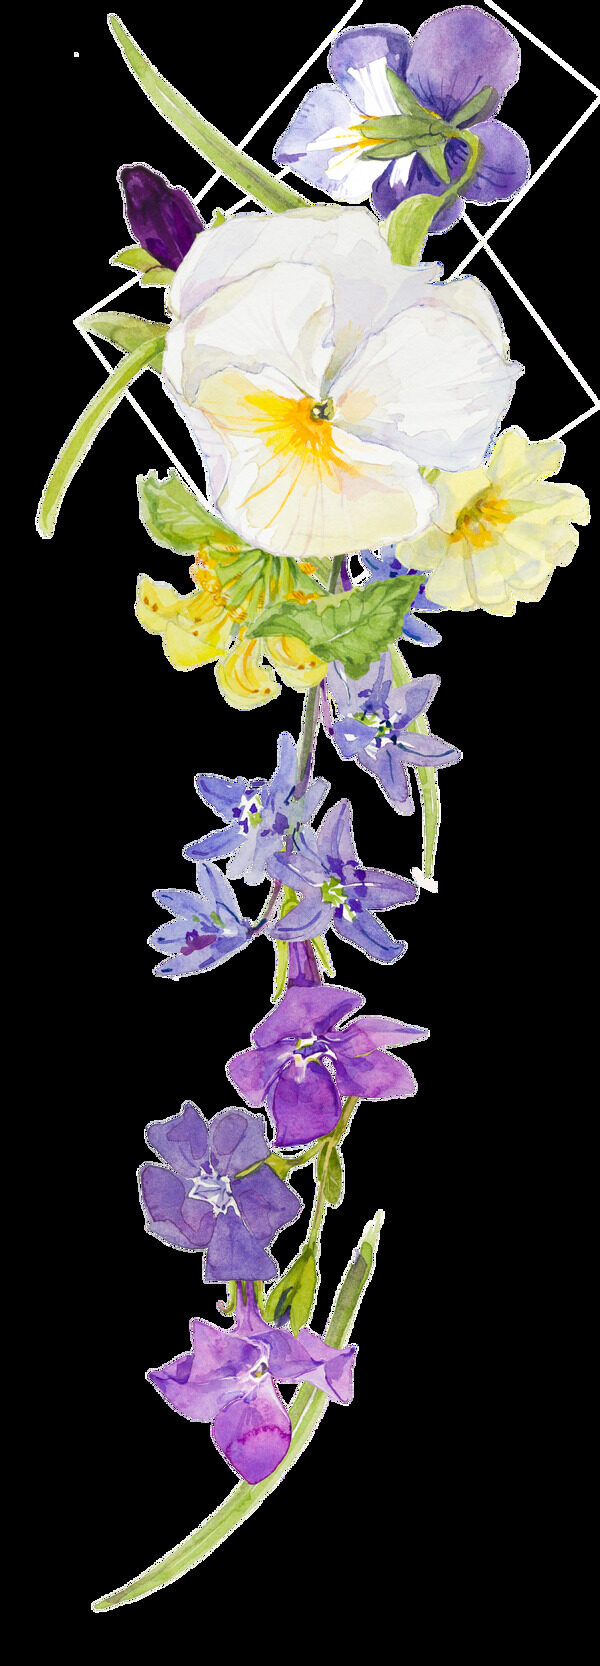 美丽清雅的紫花白花花束装饰素材